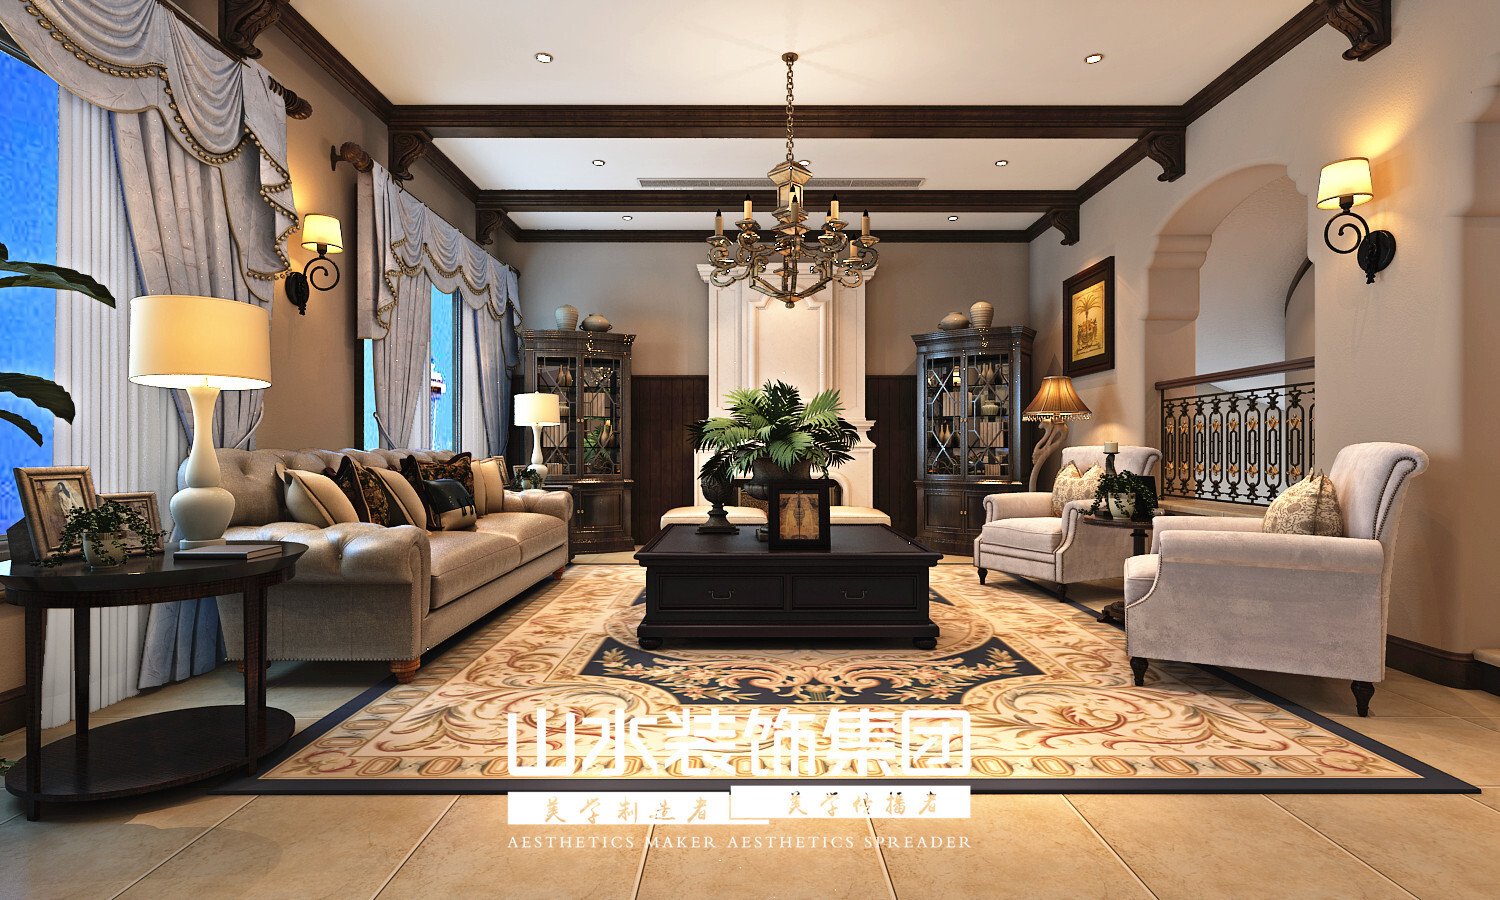 客厅图片-半岛一号 梵高岛 800平美式风格别墅装修效果图